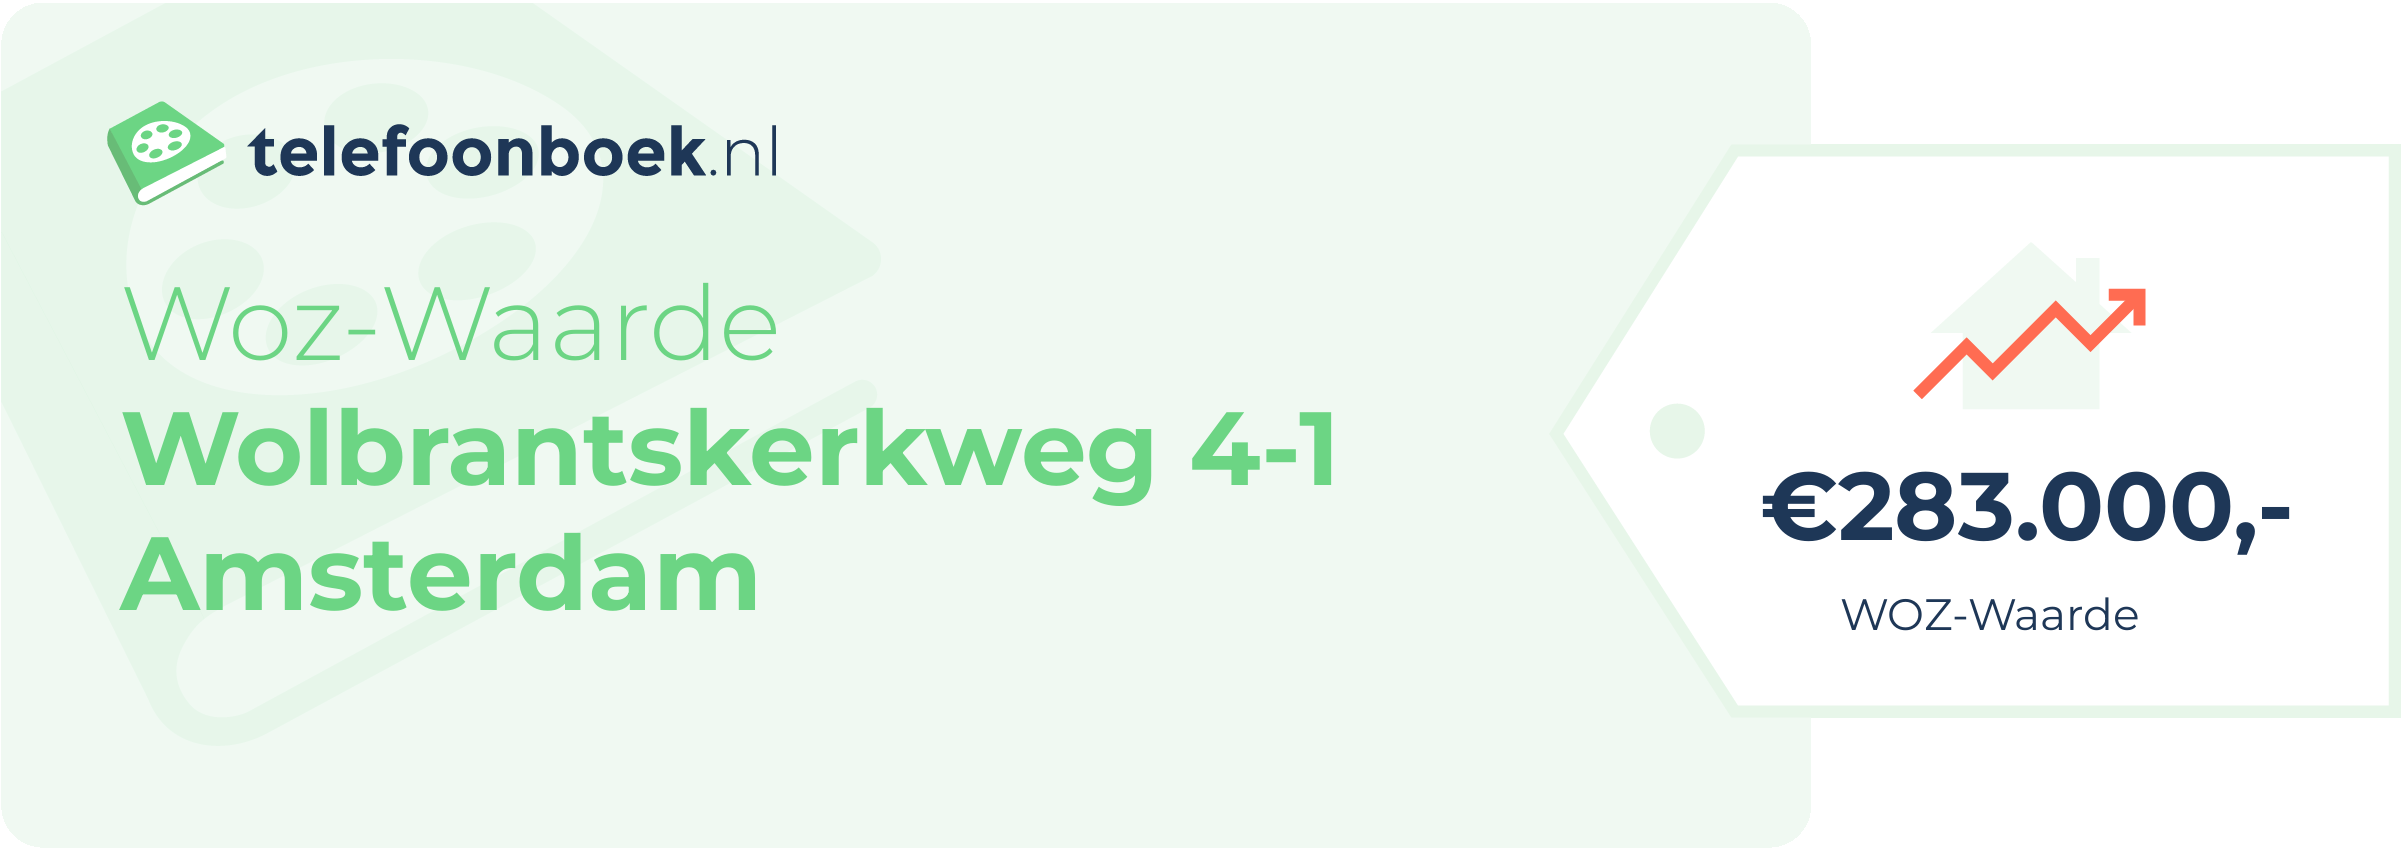 WOZ-waarde Wolbrantskerkweg 4-1 Amsterdam